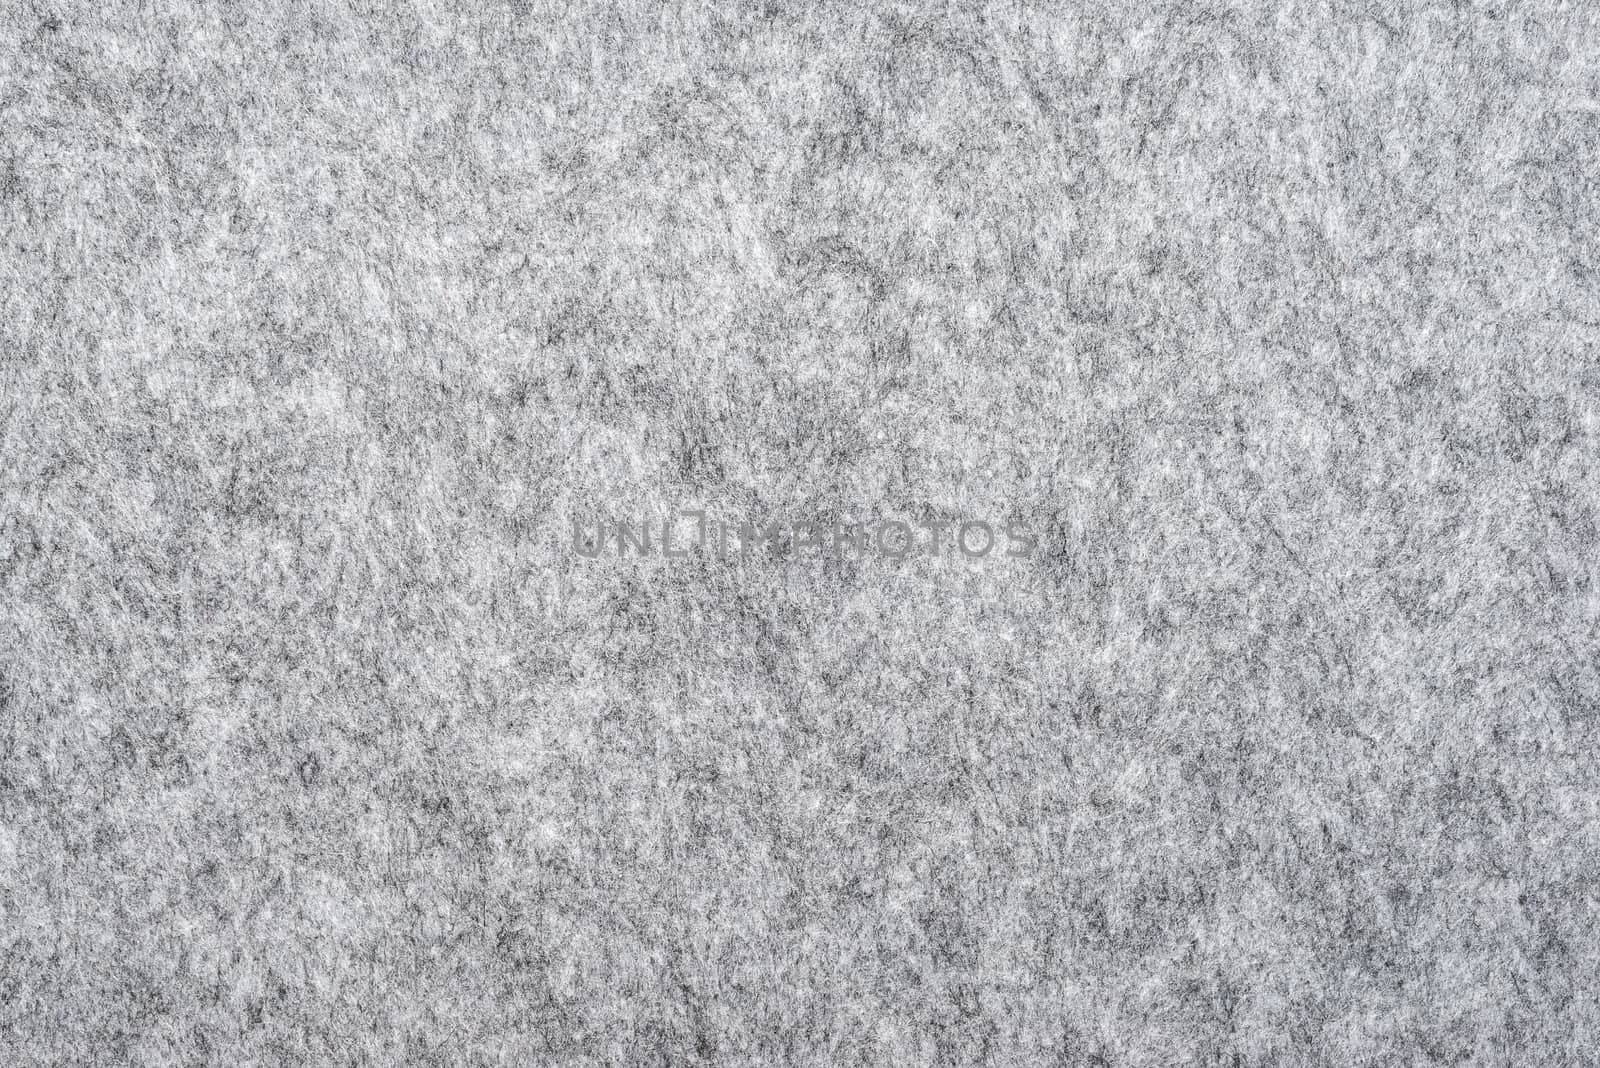 macro of grey felt texture for backgrounds by DNKSTUDIO